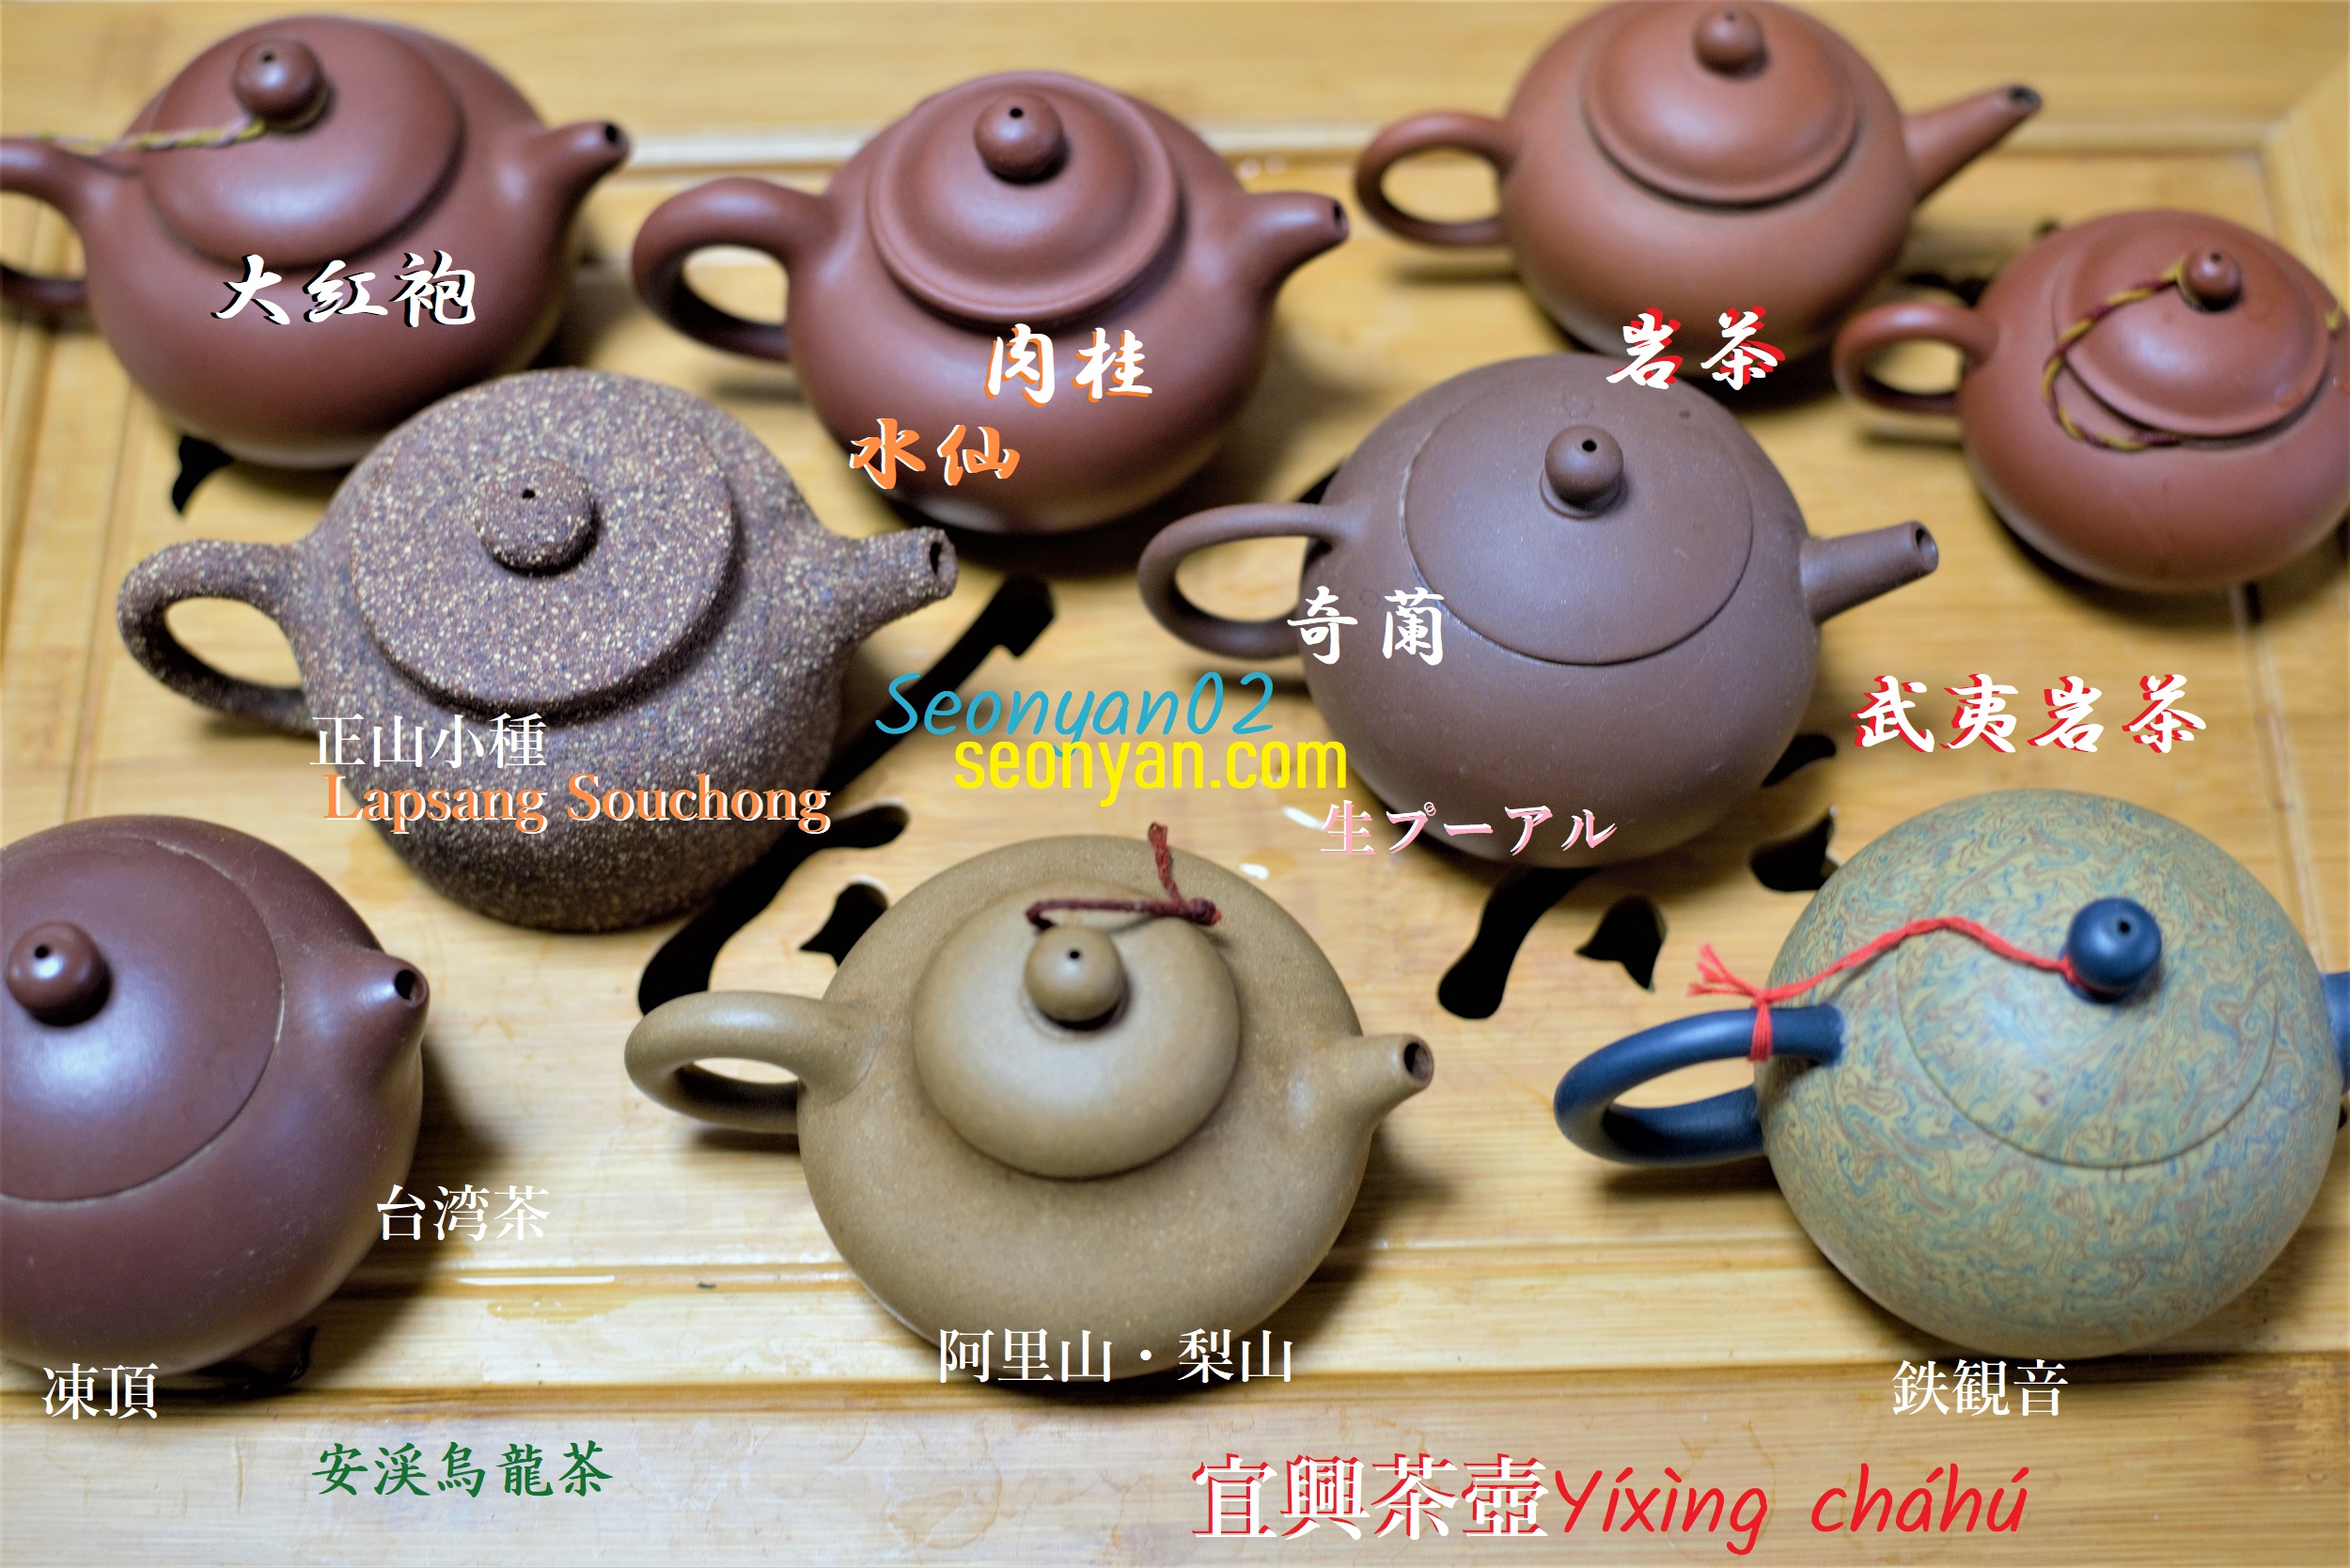 ハス絵茶壷 120cc 中国茶器 台湾茶器 茶壷 かわいい 中国茶 台湾茶 初心者 紅茶 普段使い コレクション ティータイム チル 心温まる